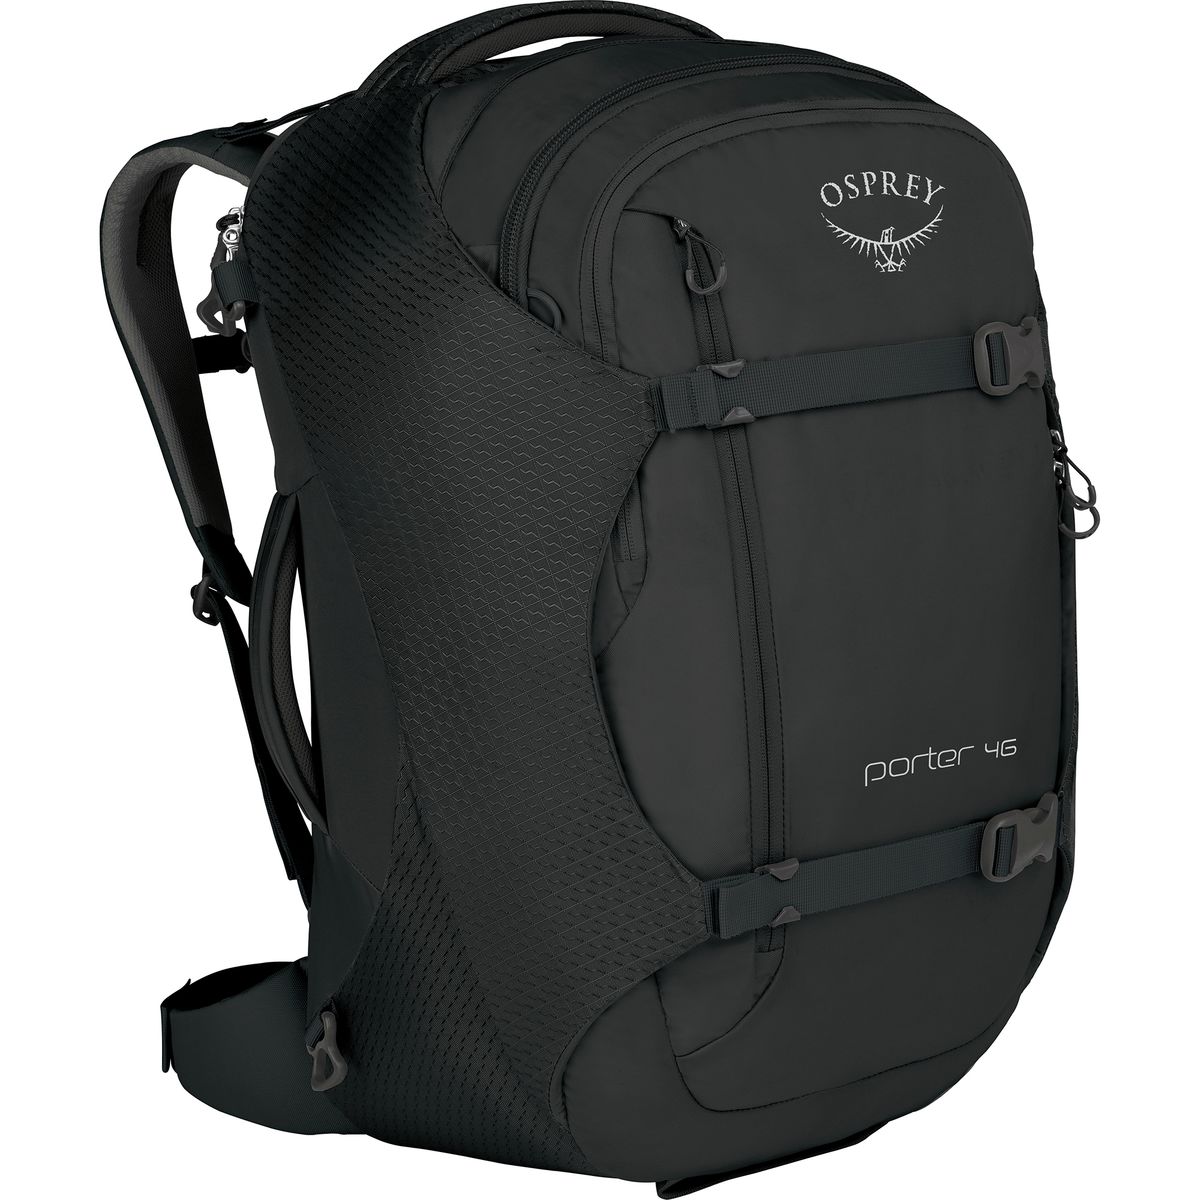 osprey porter 46 travel backpack (2020 version)